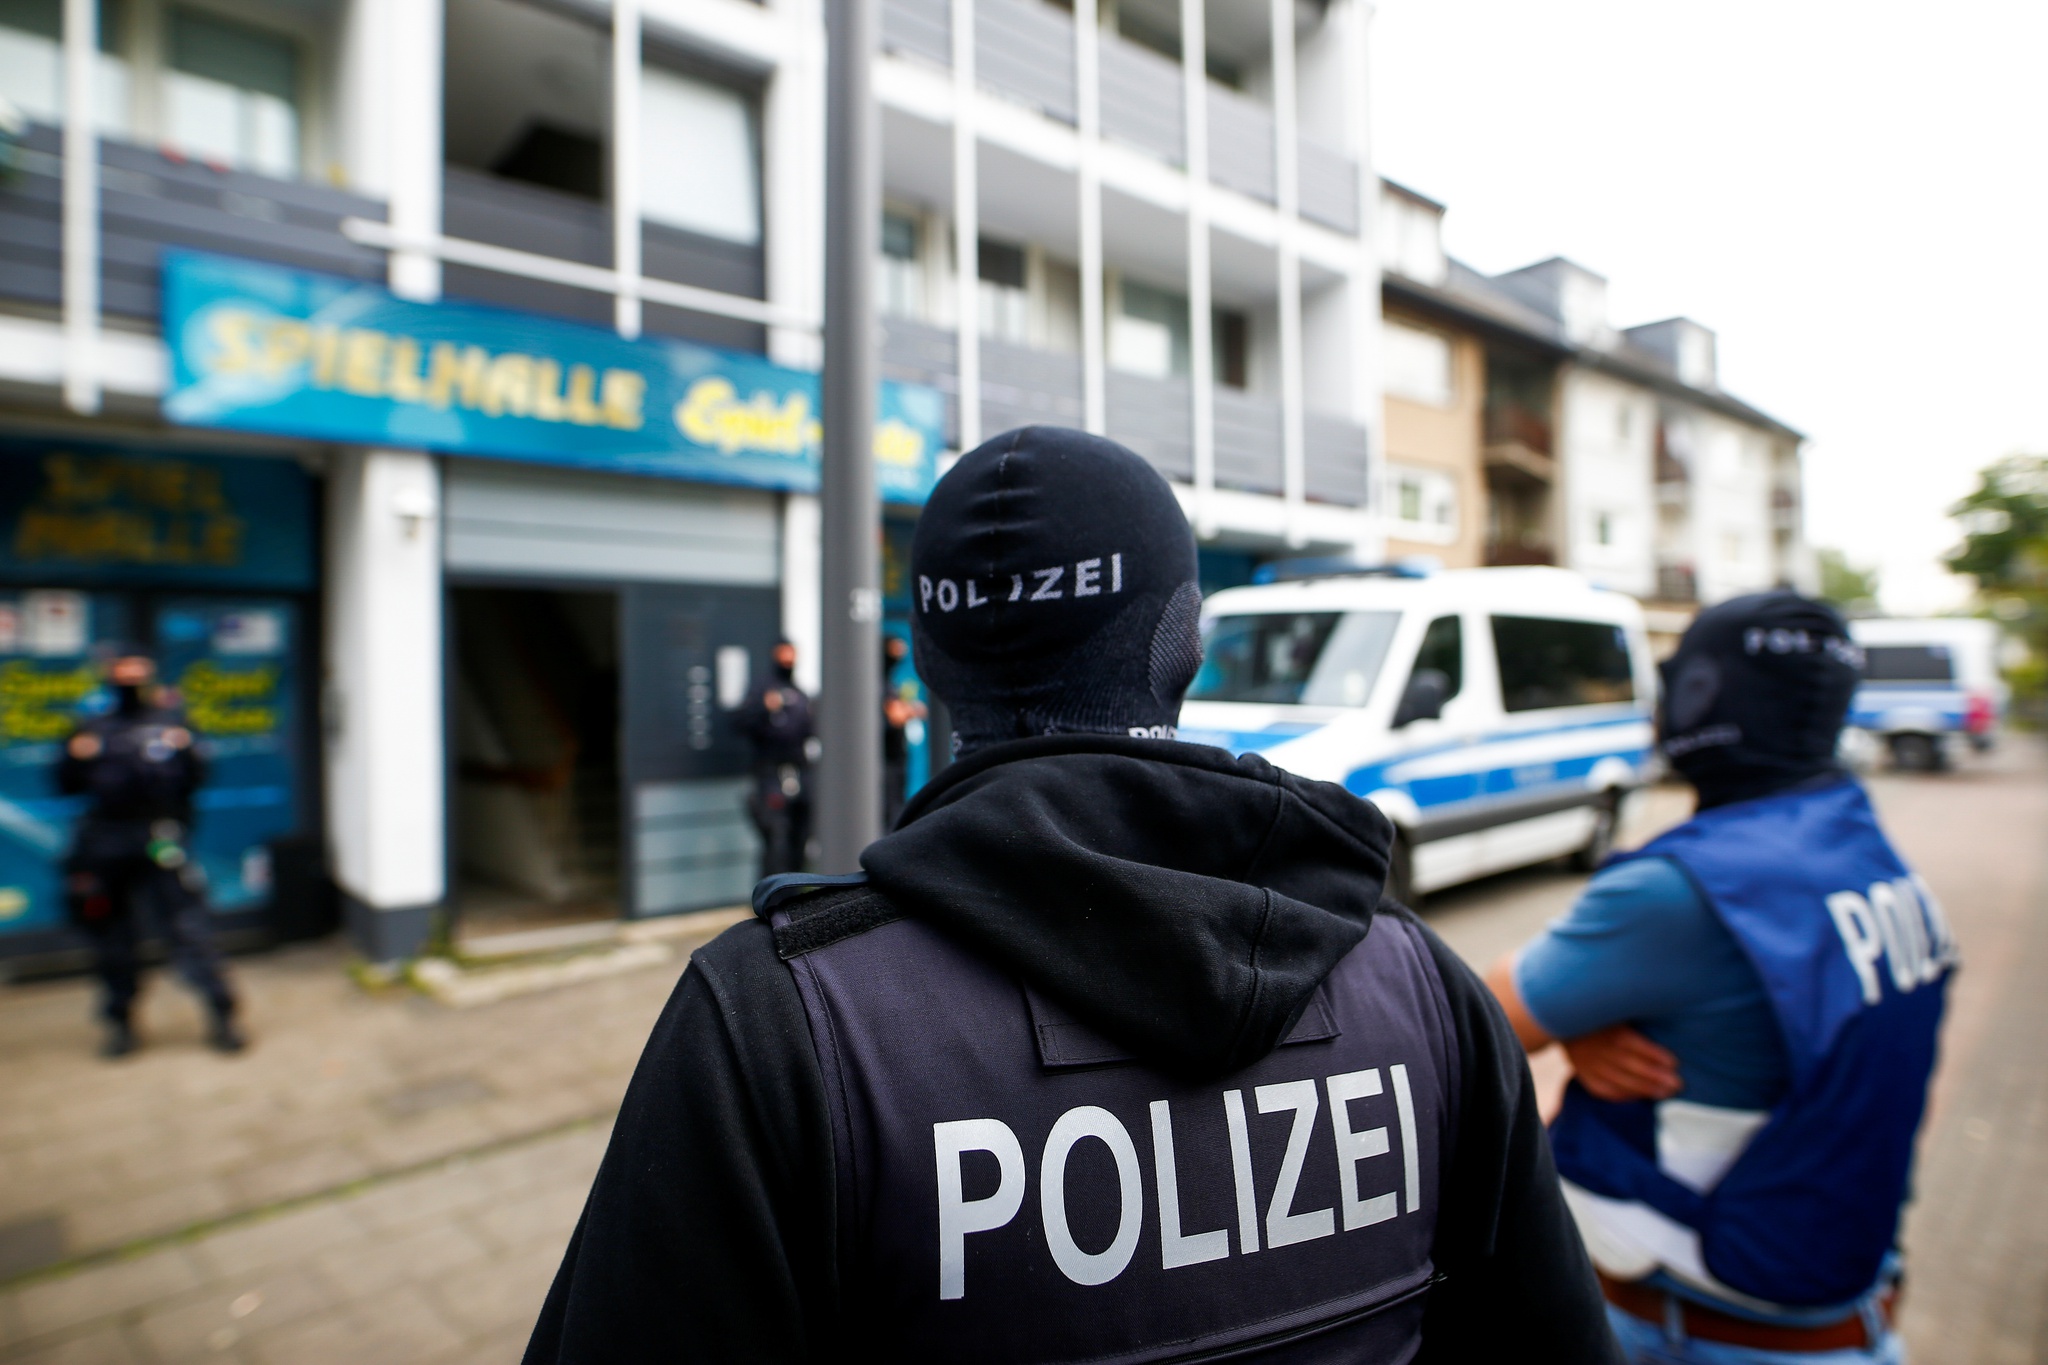 Deutsche Polizei-Spezialeinheit von rechtsextremen Links demontiert |  Mehr rechts